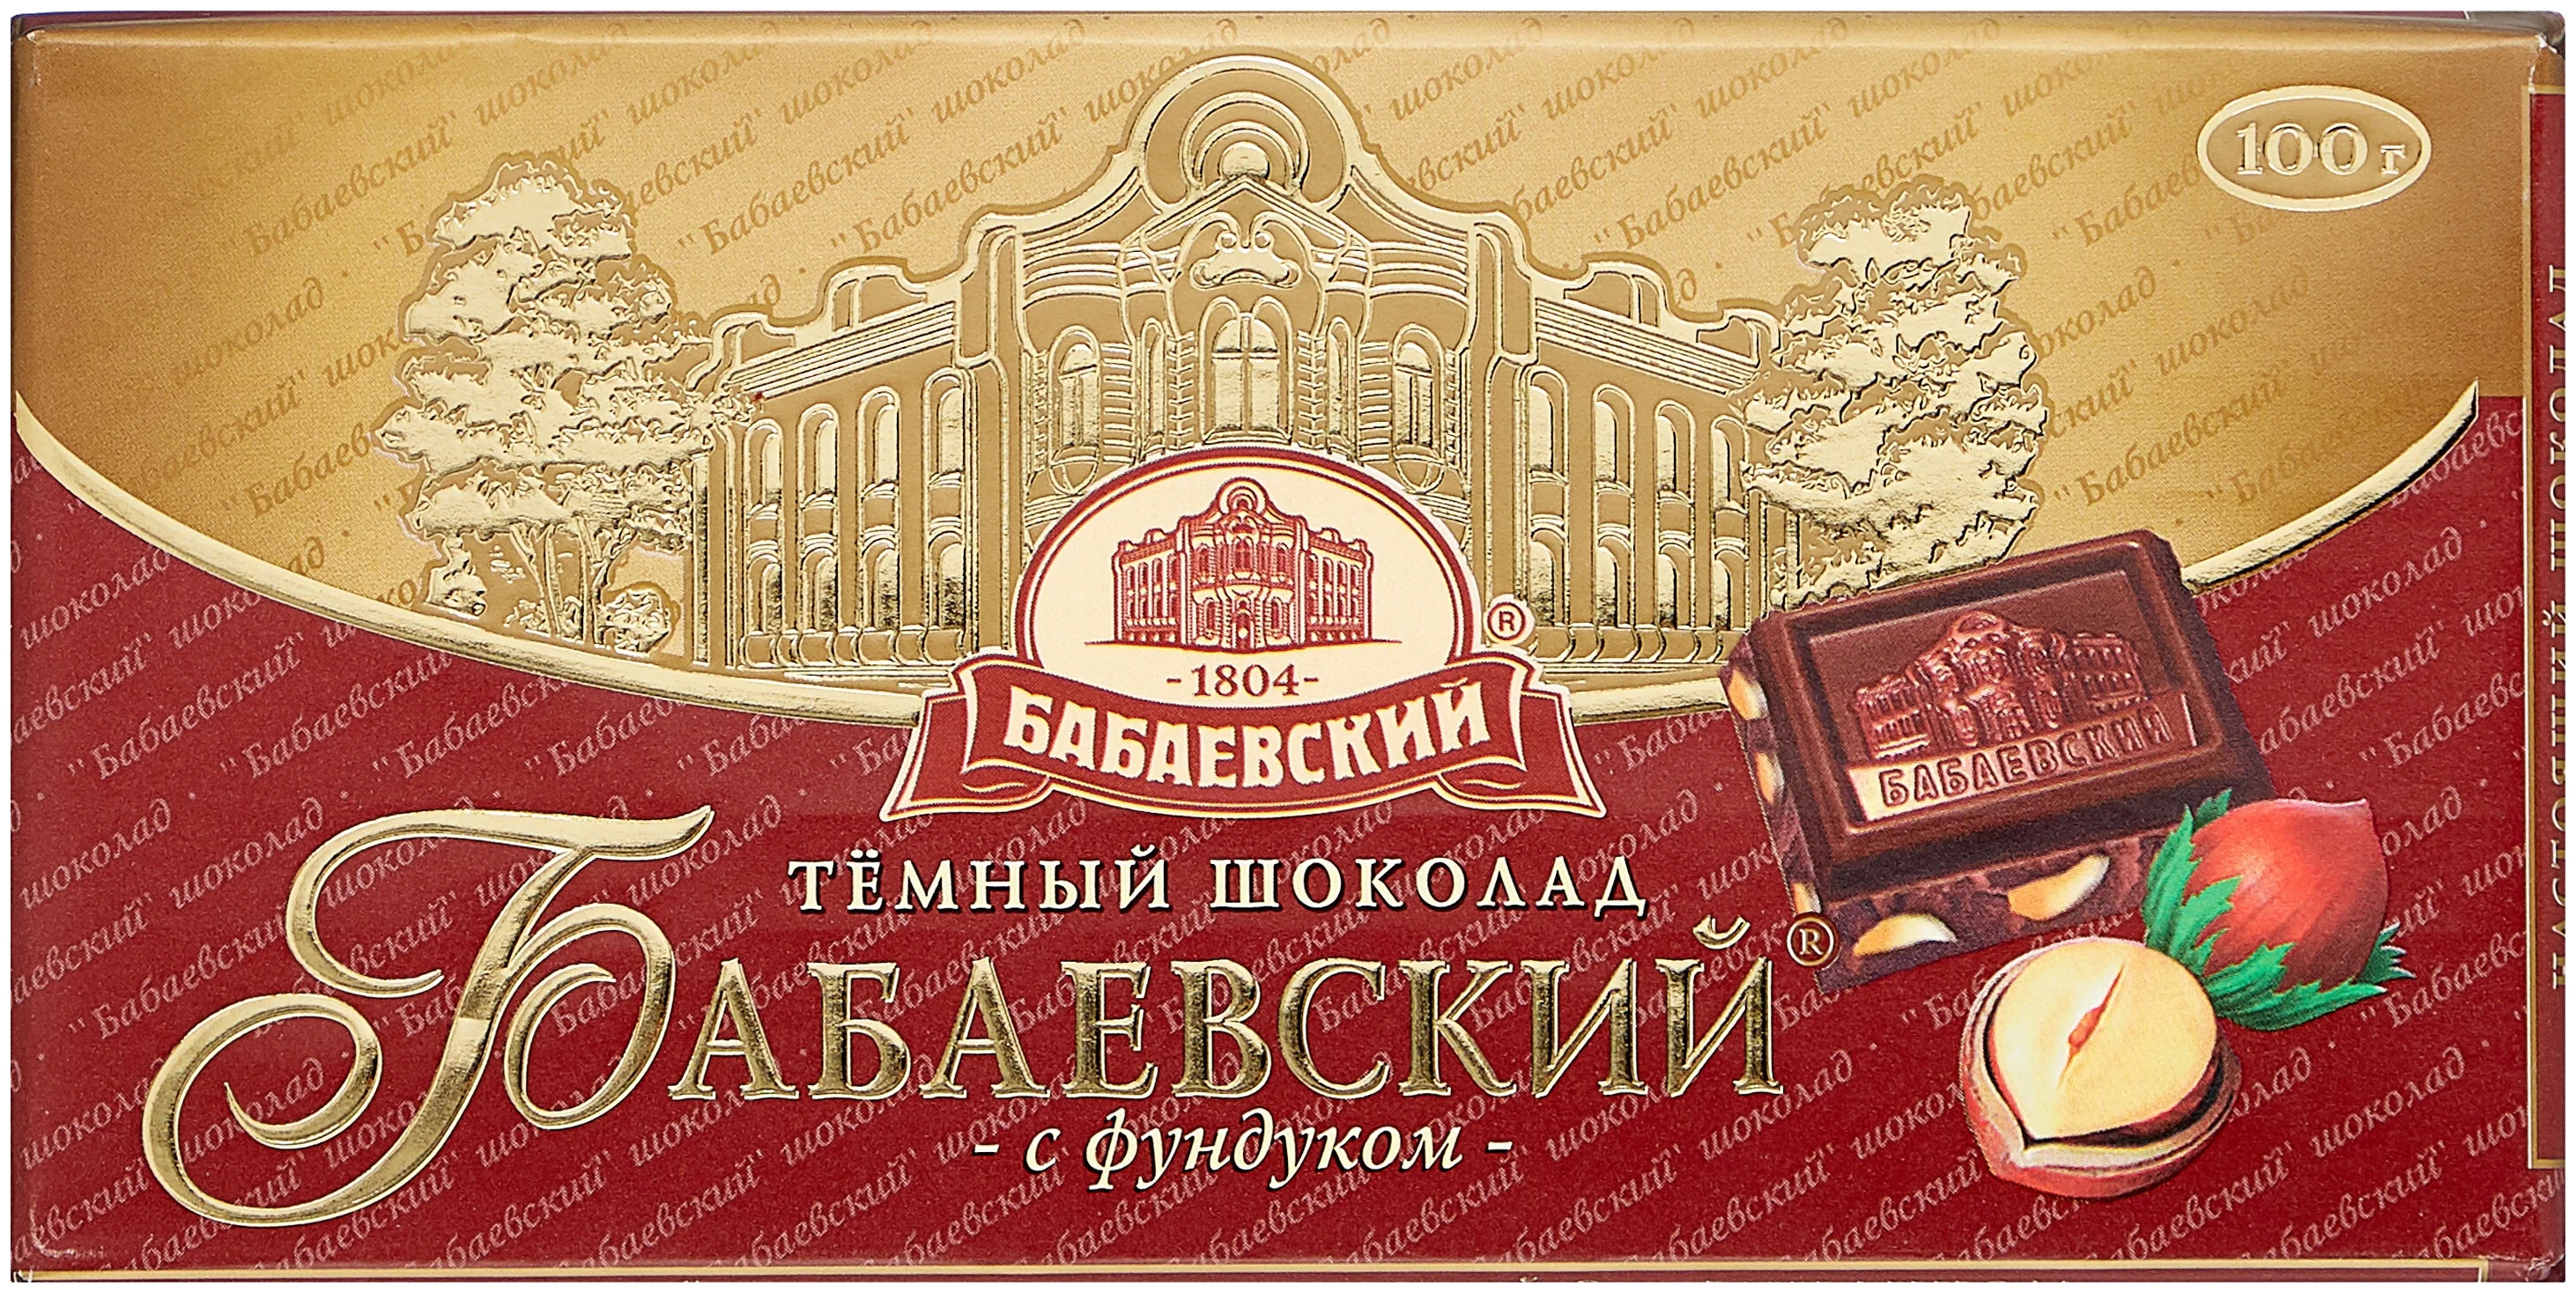 Бабаевский "С фундуком" - содержание какао: 55 %